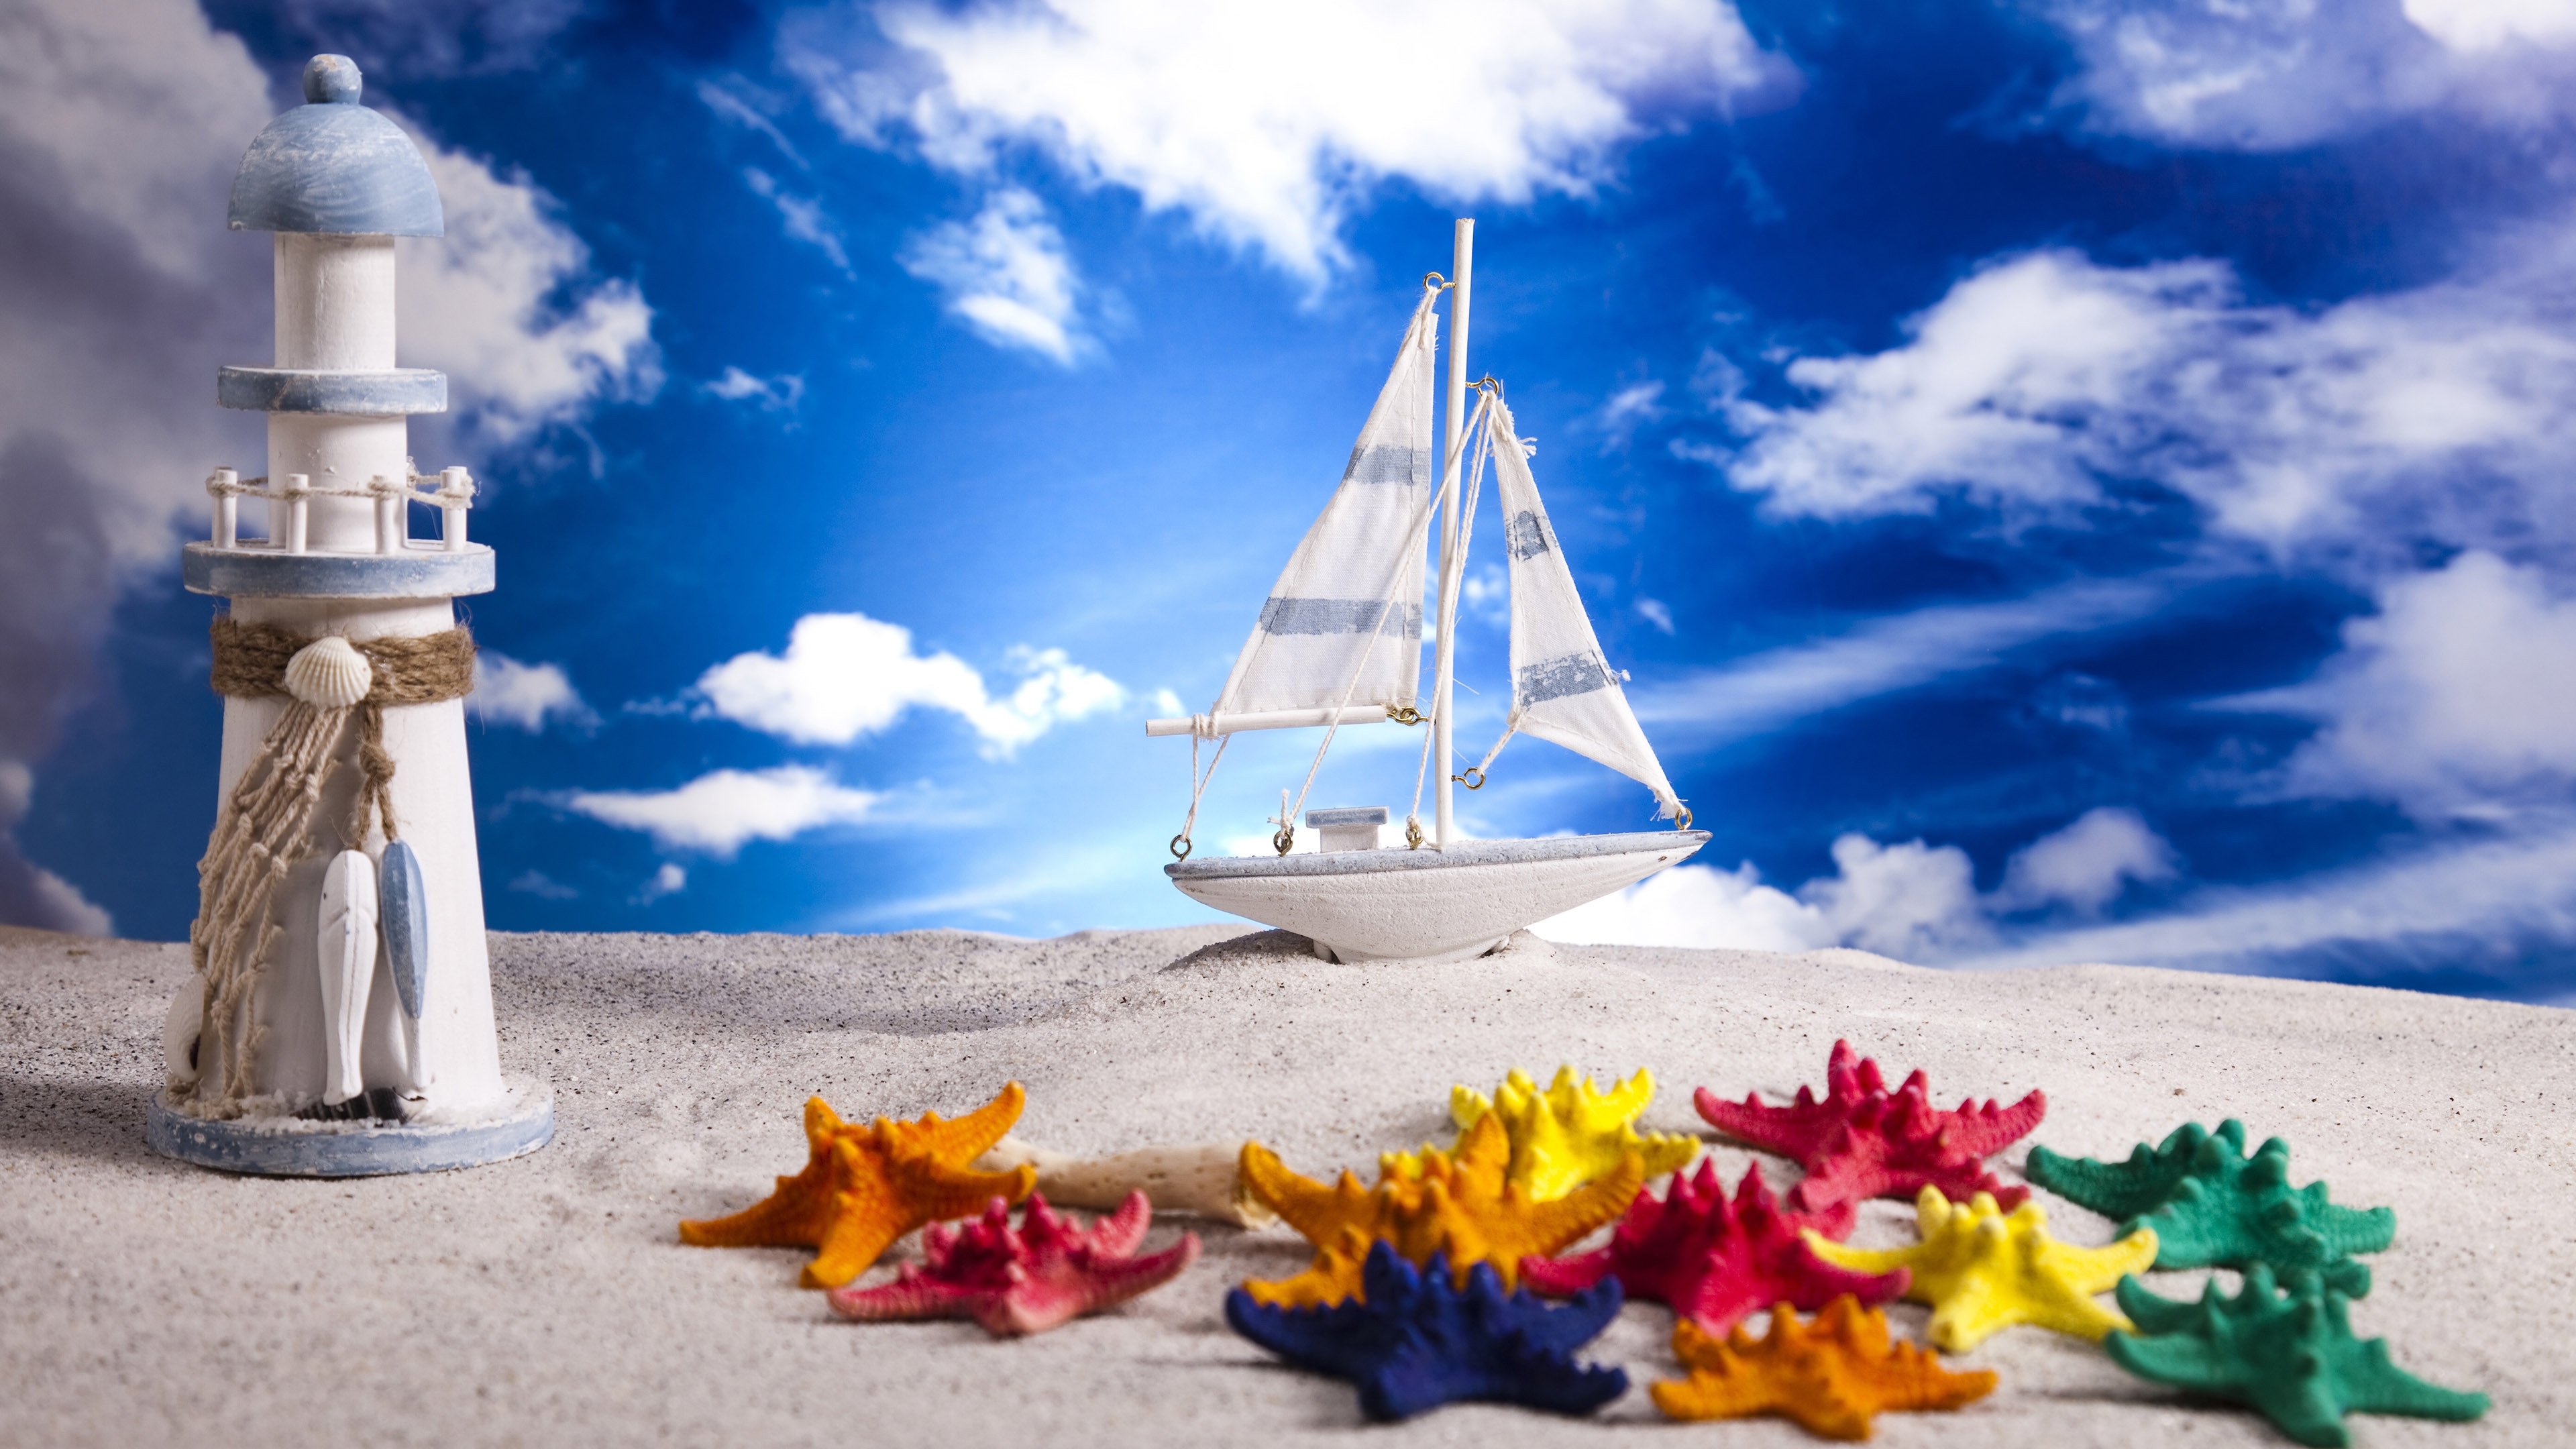 Summer Beach Miniature for 3840 x 2160 Ultra HD resolution